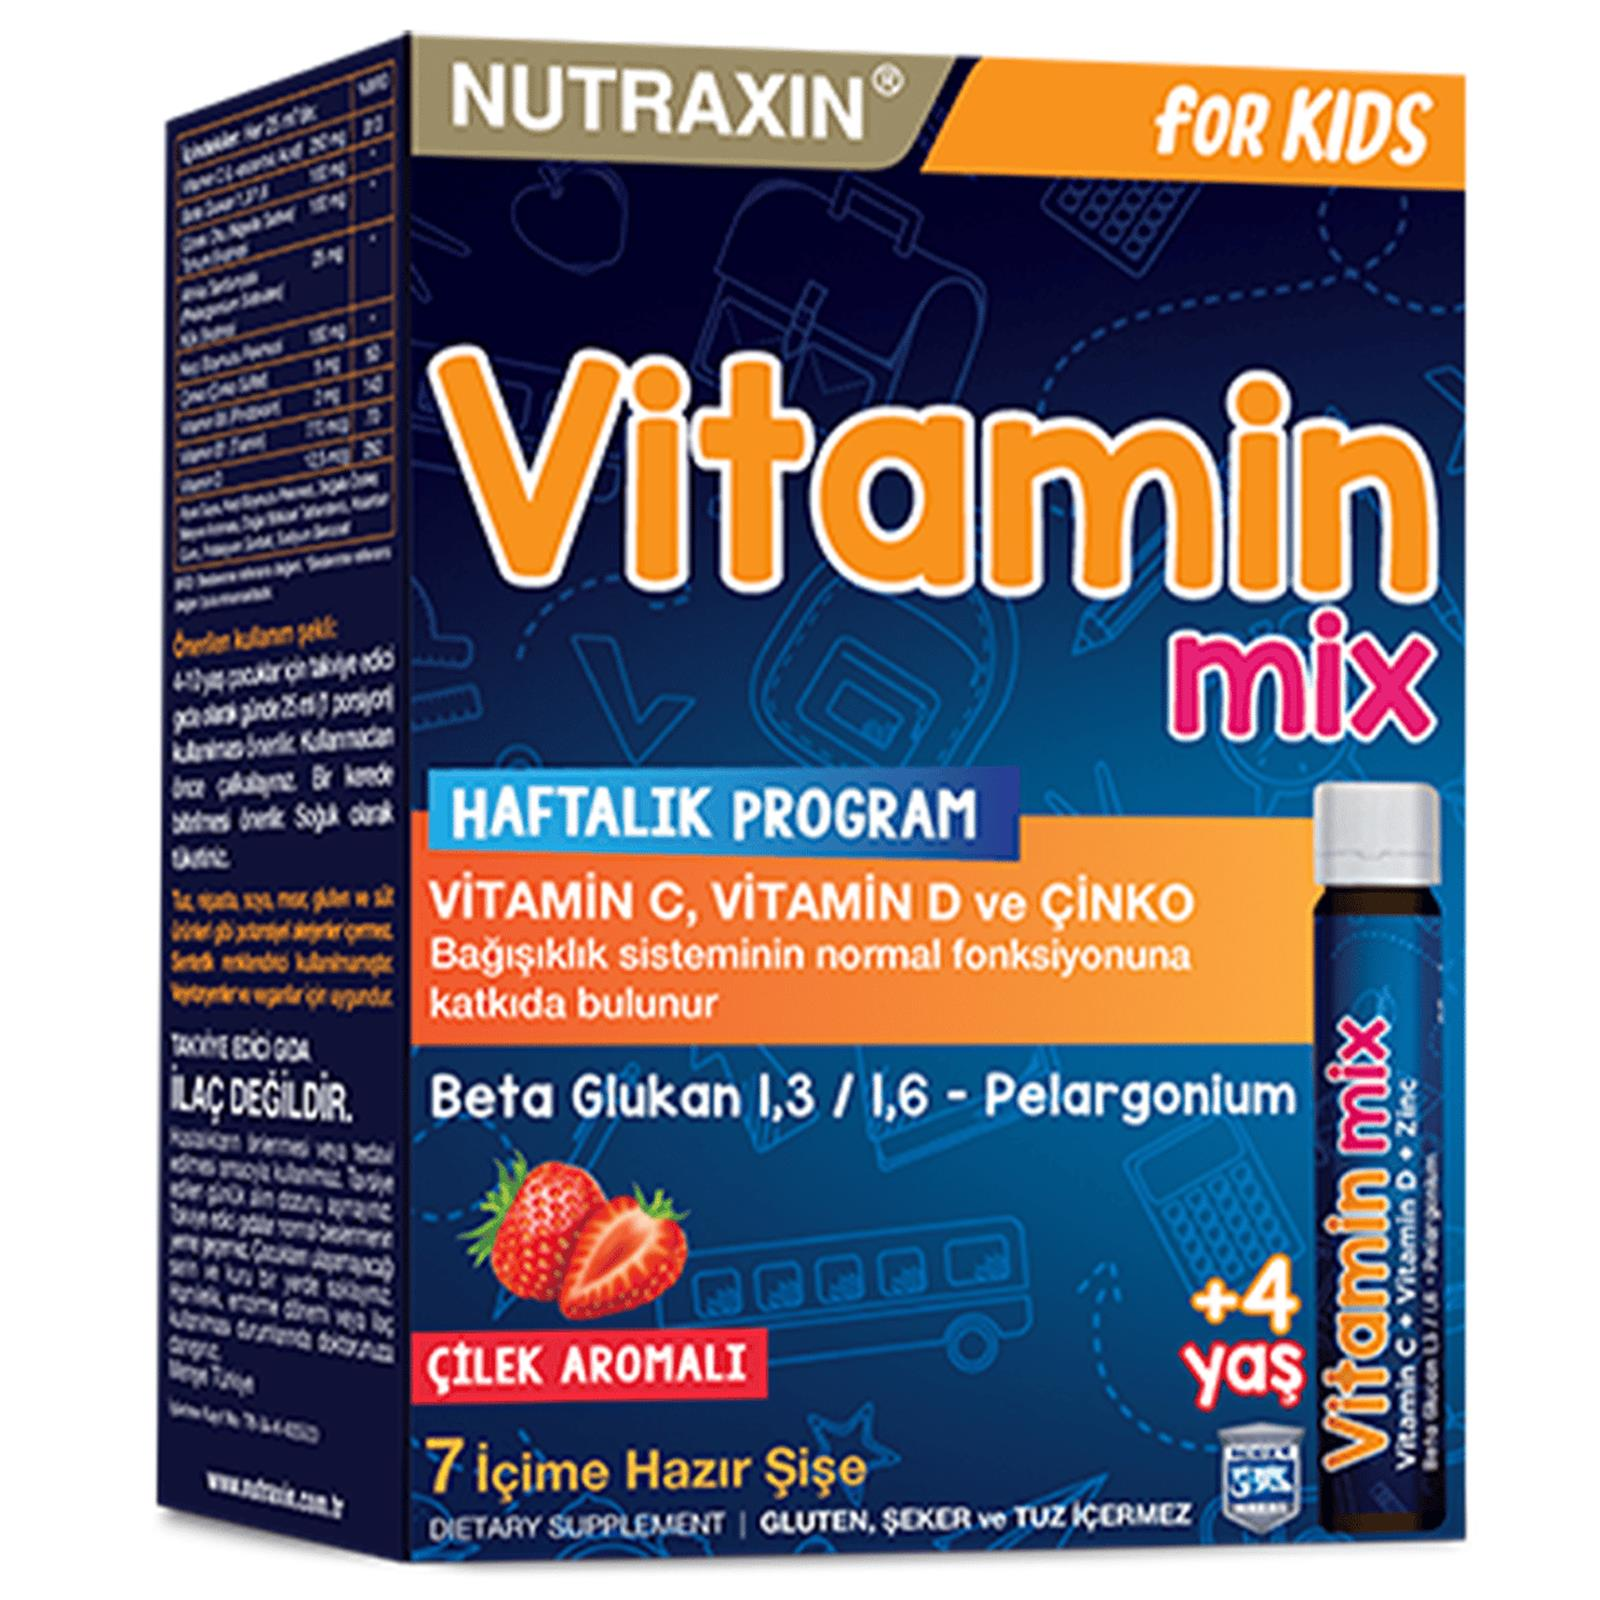 Nutraxin Vitamin Mix For Kids 7 X 25 ml İçime Hazır Şişe - Çilek Aromalı